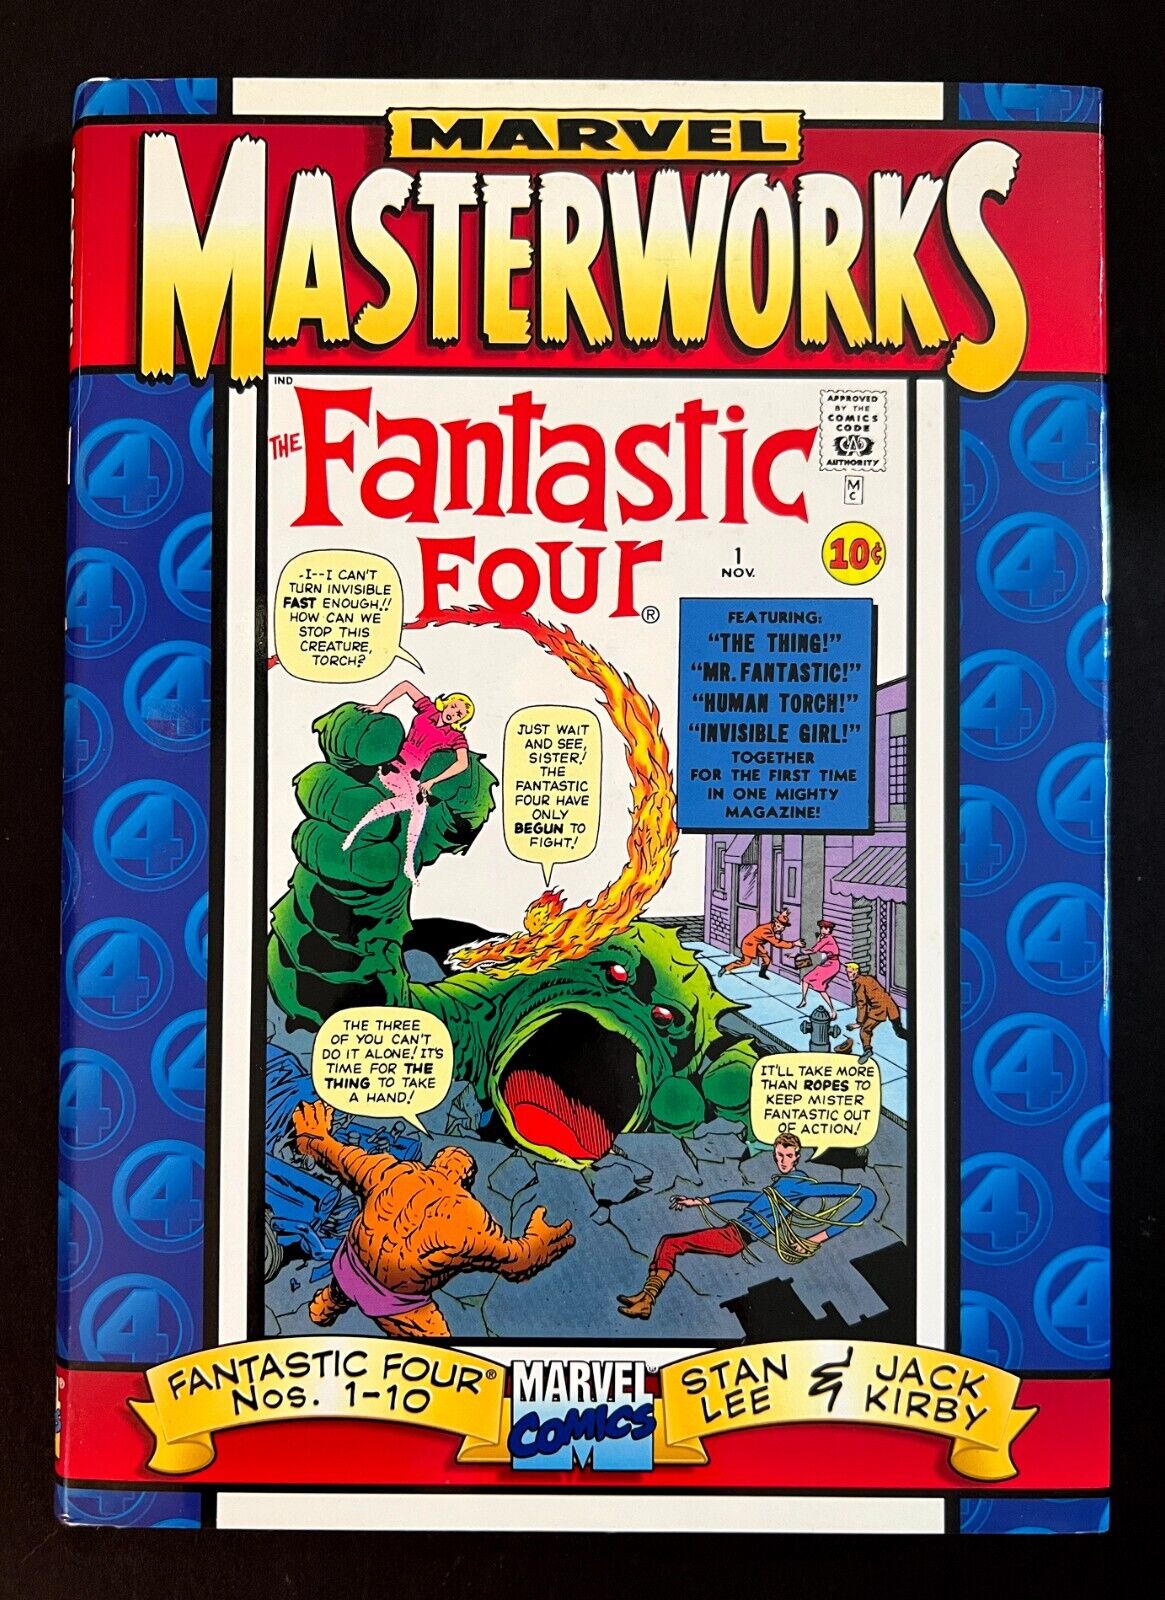 FANTASTIC FOUR Vol. 1 #1-10 MARVEL MASTERWORKS Hi-Grade Hardcover 1997